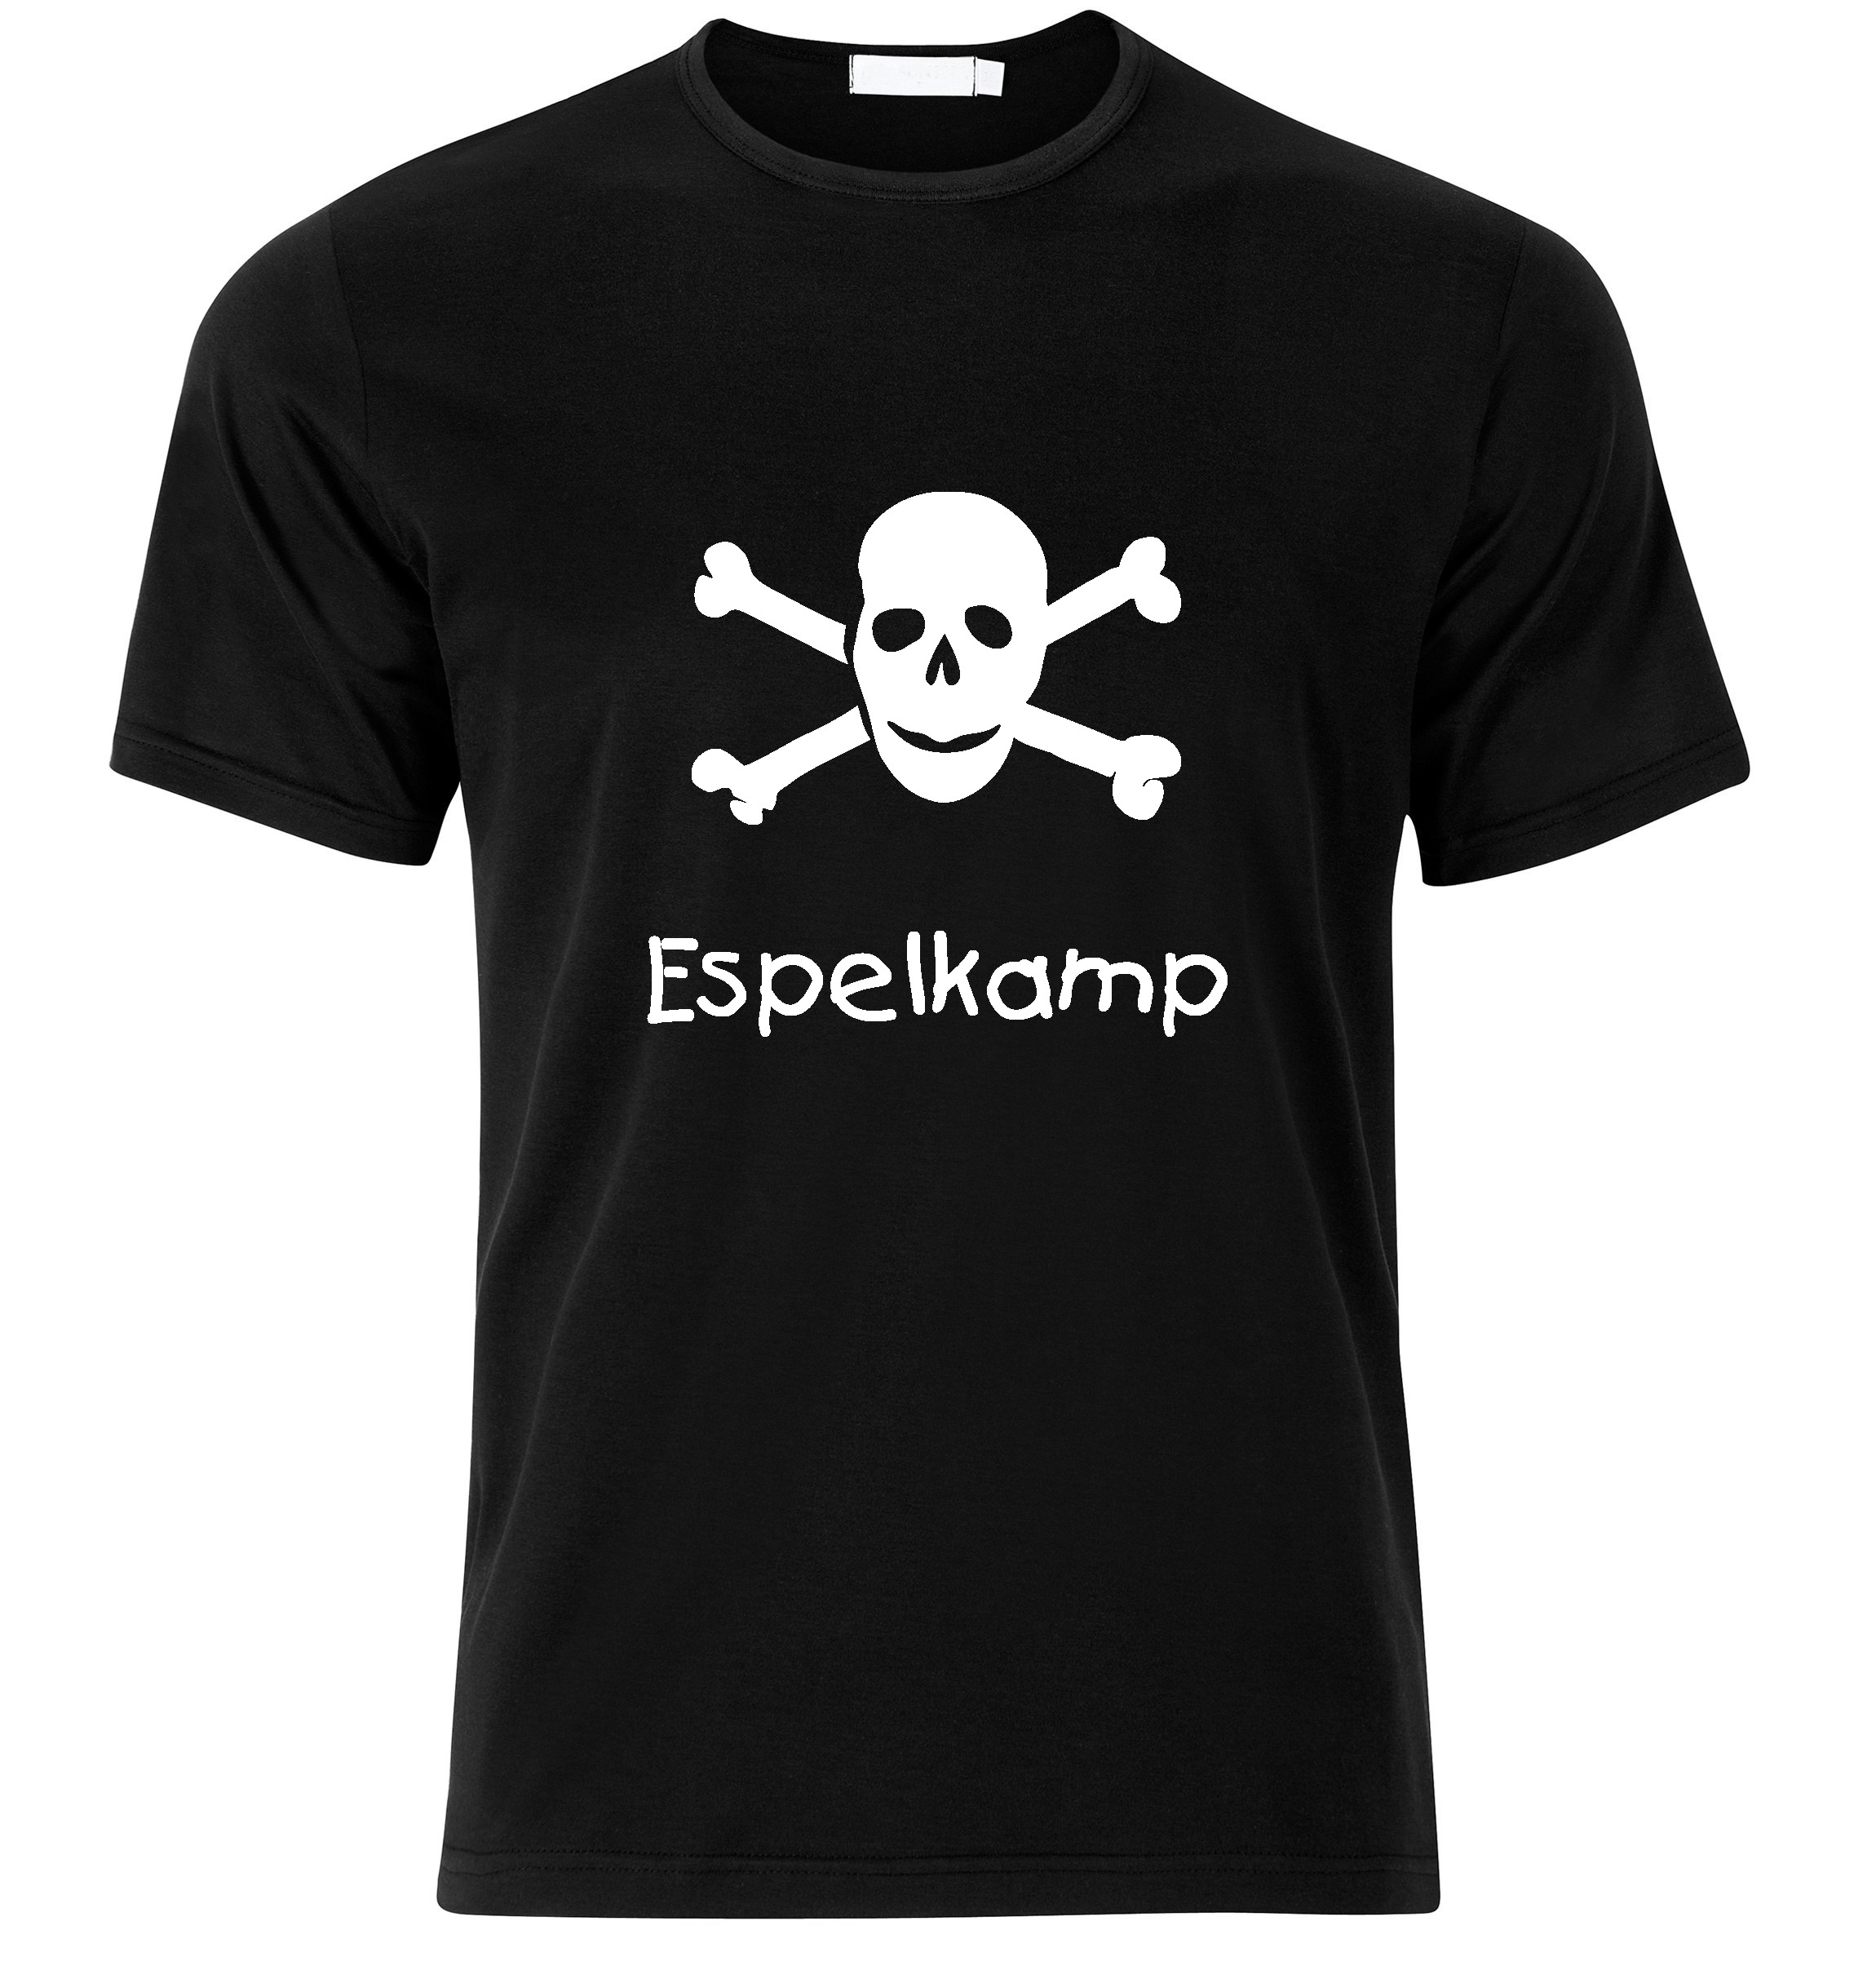 T-Shirt Espelkamp Jolly Roger, Totenkopf